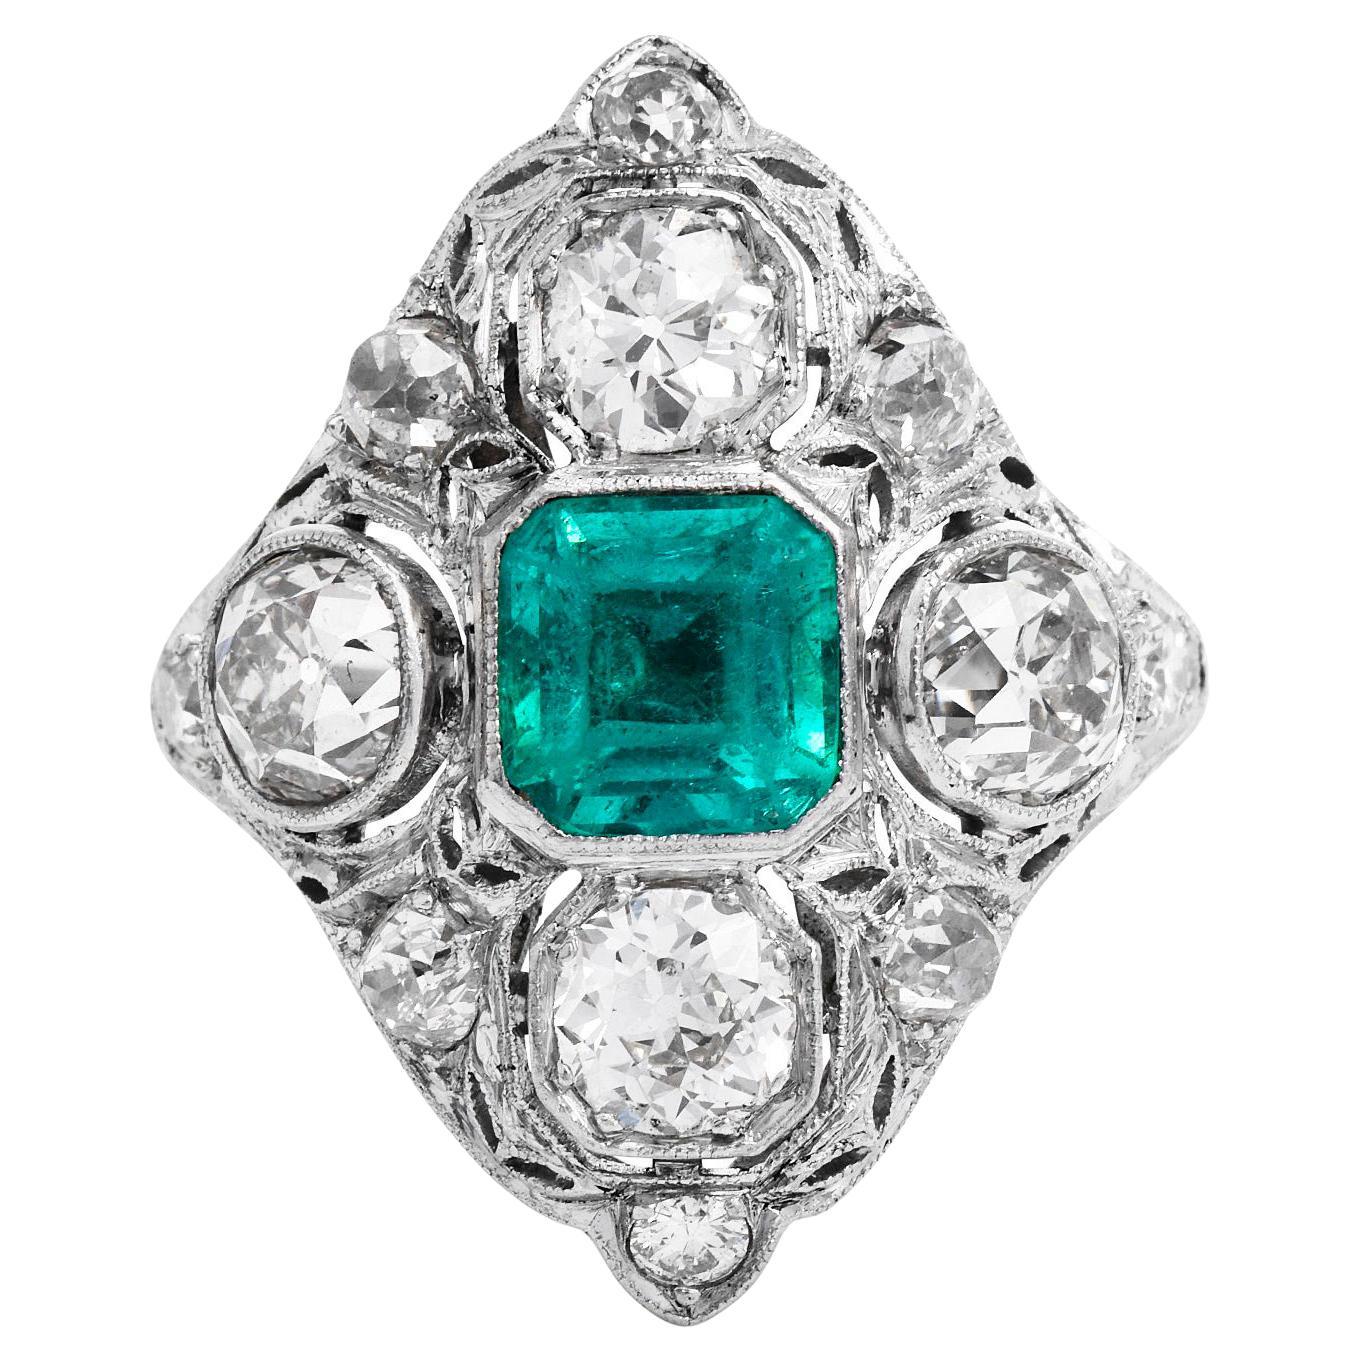 Collectional Antique Emerald Cocktail Ring!

In der Mitte befindet sich ein echter kolumbianischer Smaragd mit einem traditionellen achteckigen Schliff und einem Gewicht von ca. 1,30 Karat. Er ist der perfekte Mittelpunkt für einen auffälligen